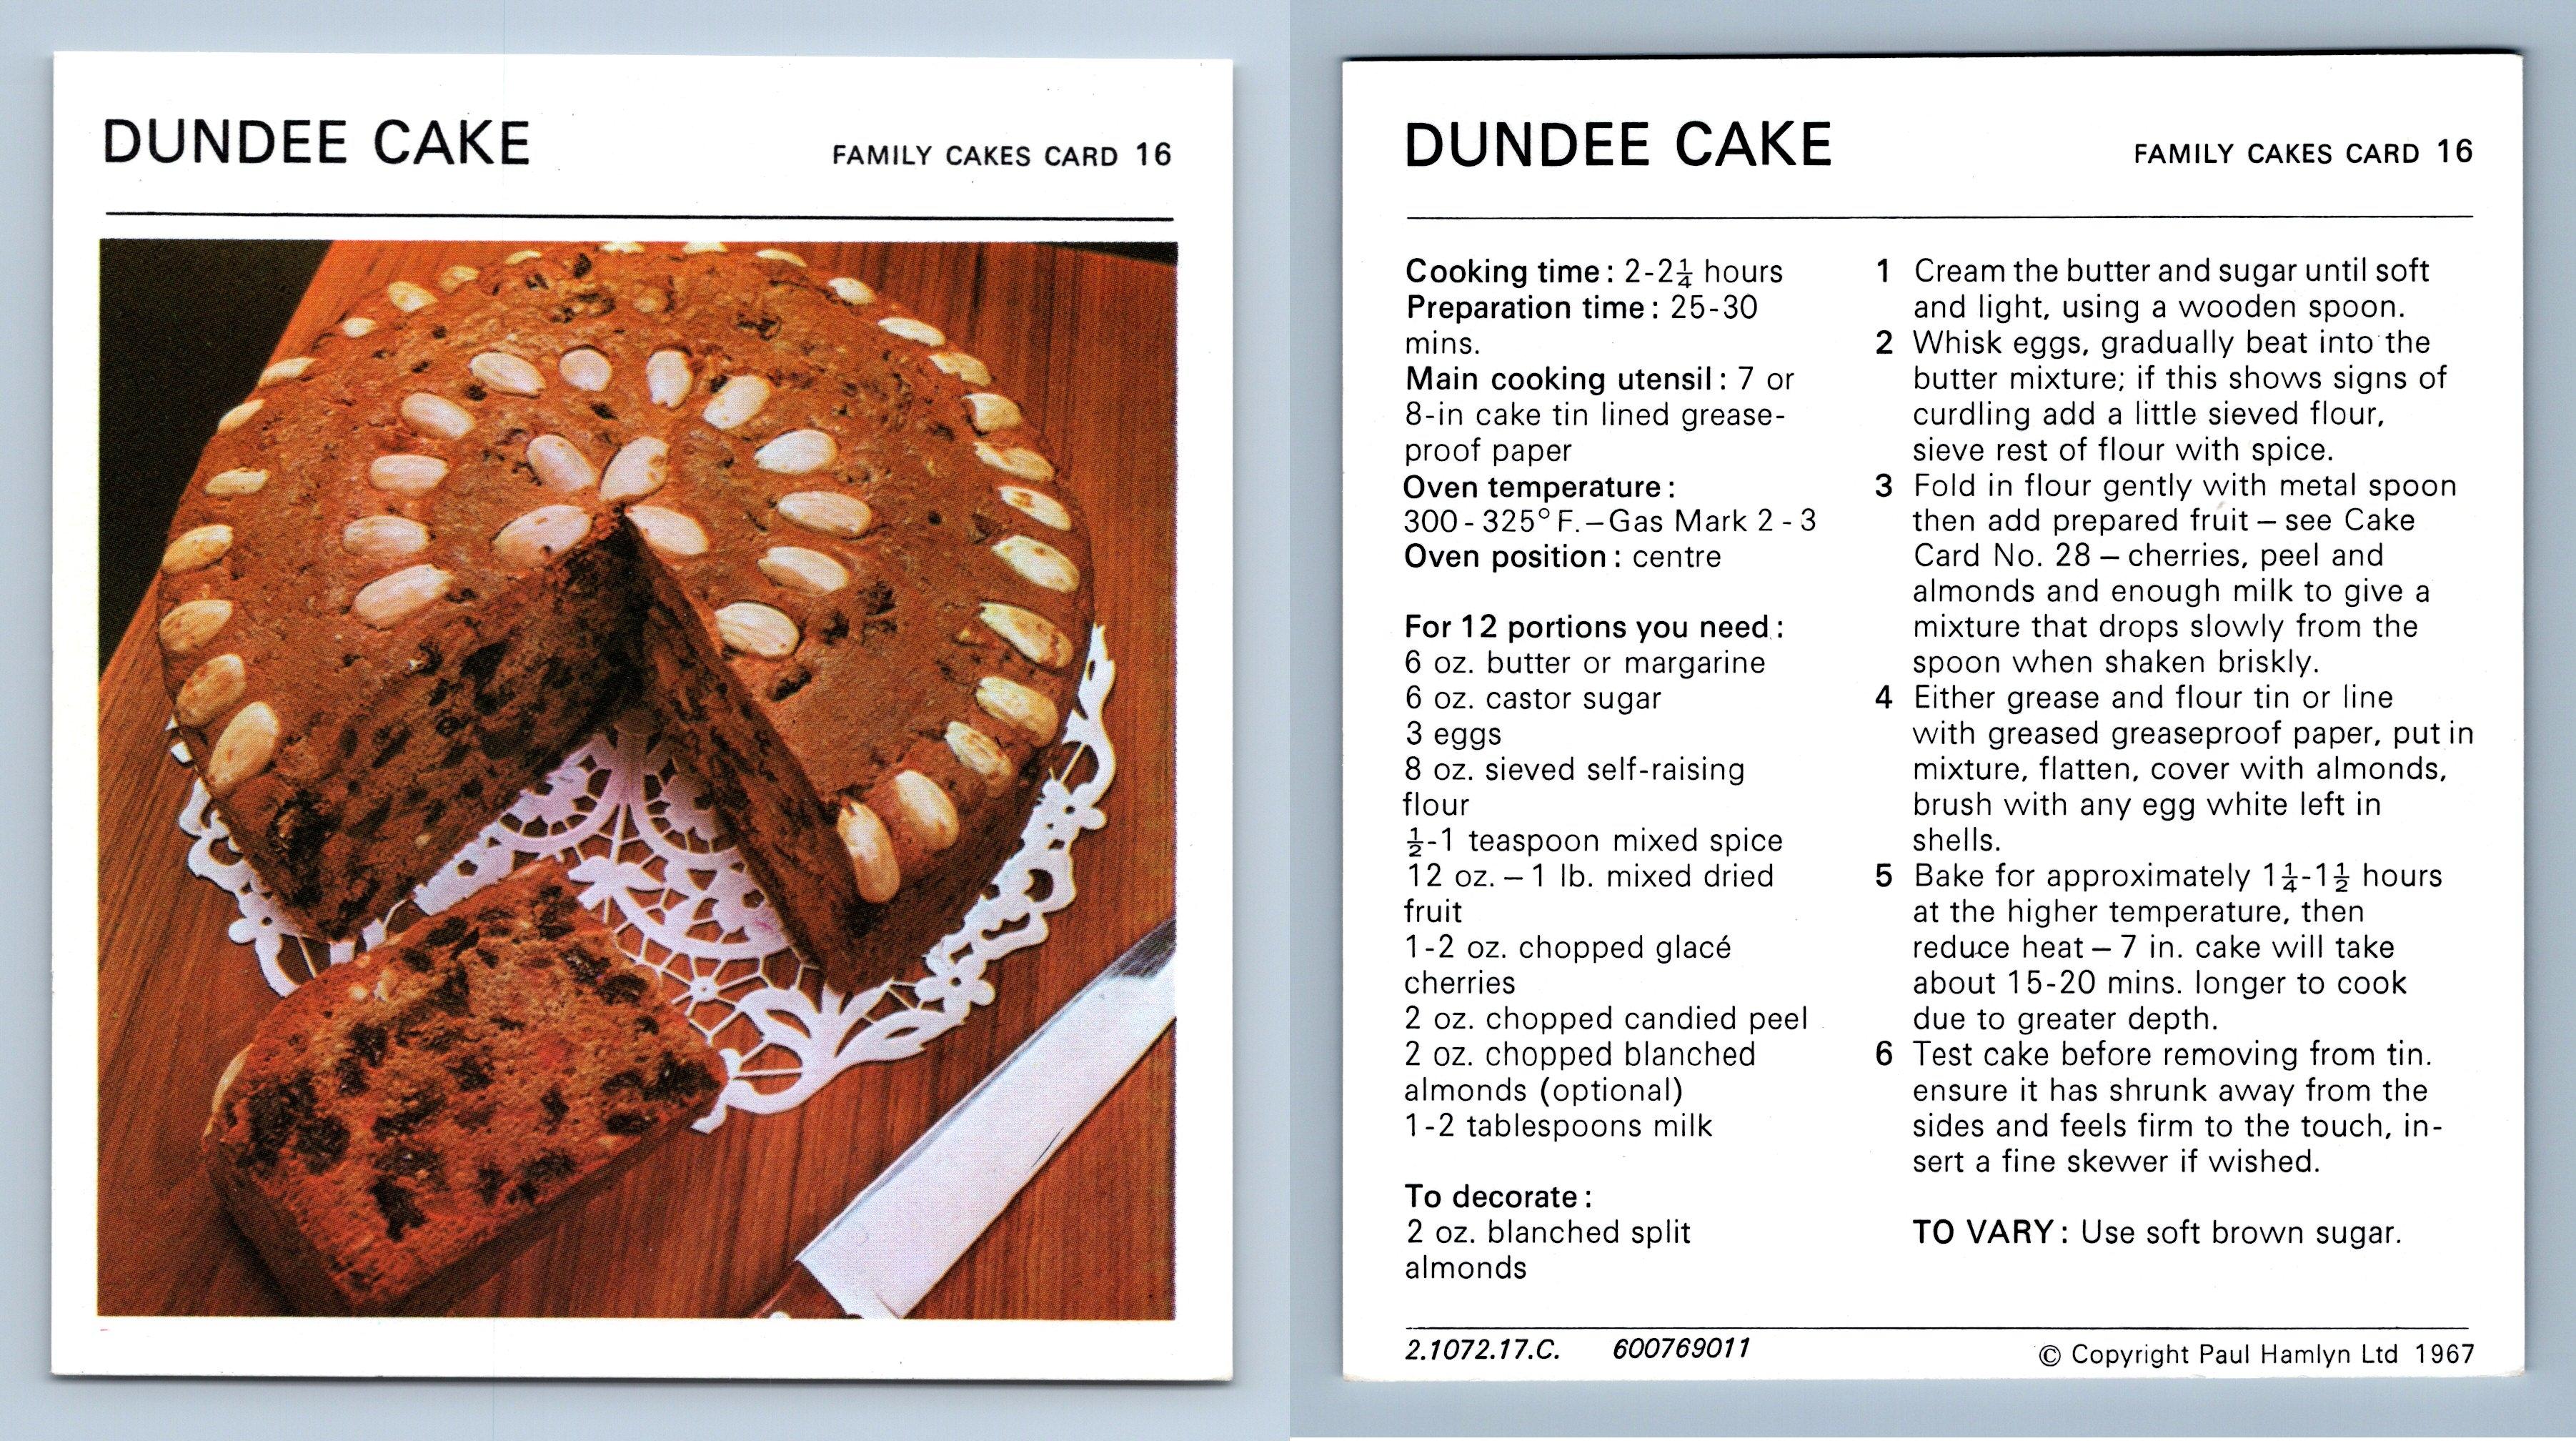 Dundee Cake - KOCHEN UND WHISKY